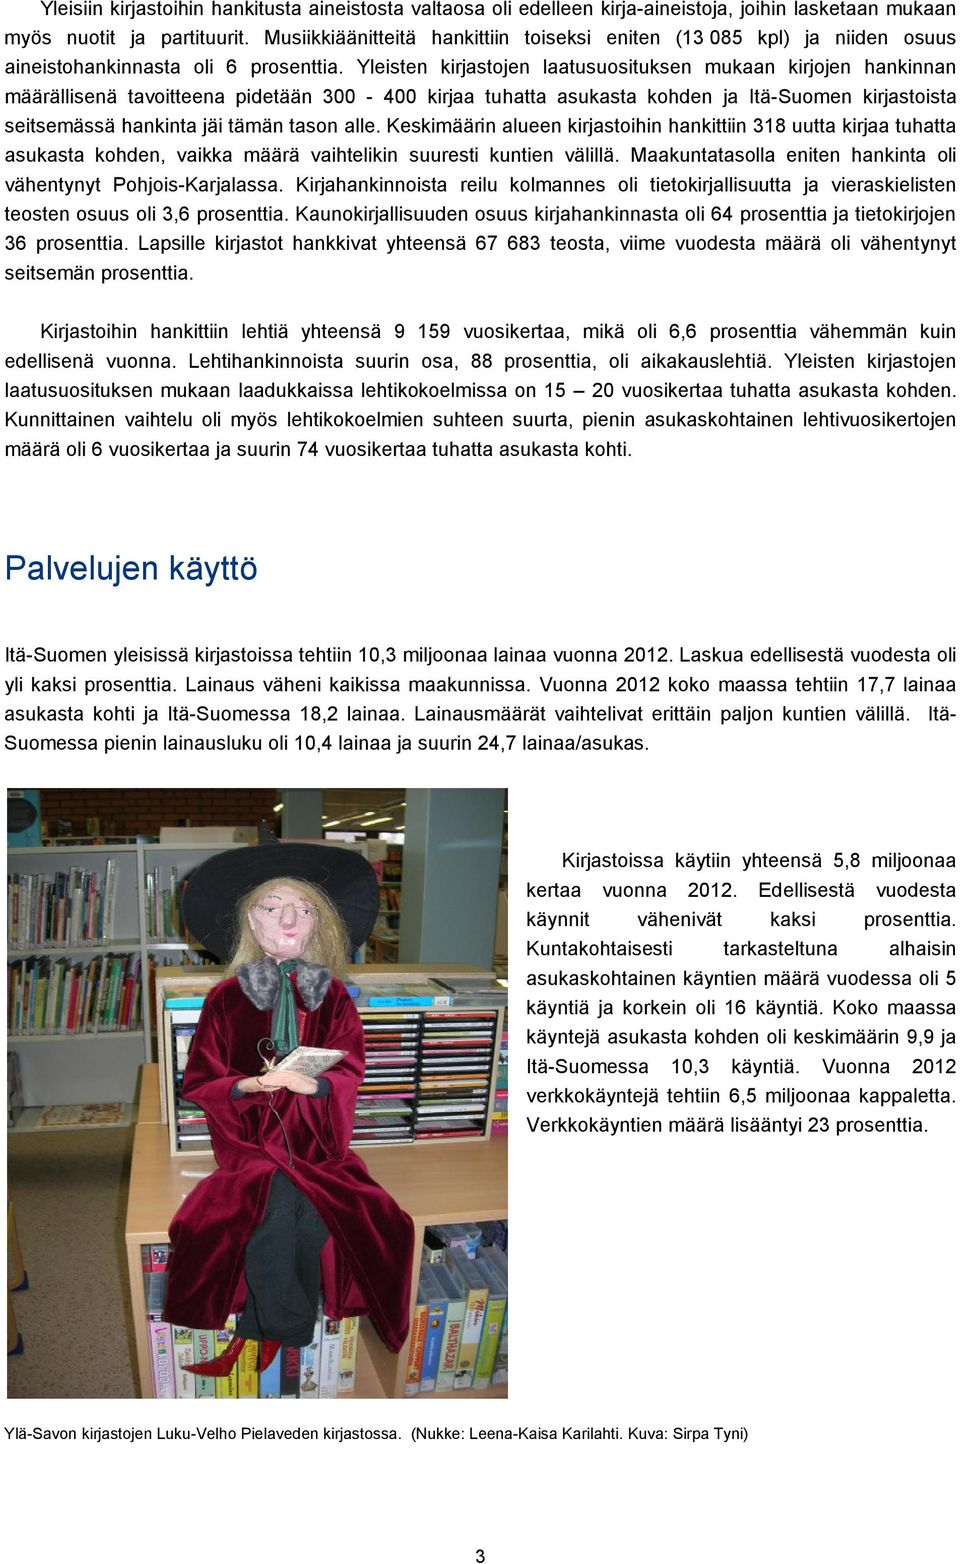 Yleisten kirjastojen laatusuosituksen mukaan kirjojen hankinnan määrällisenä tavoitteena pidetään 300-400 kirjaa tuhatta asukasta kohden ja Itä-Suomen kirjastoista seitsemässä hankinta jäi tämän